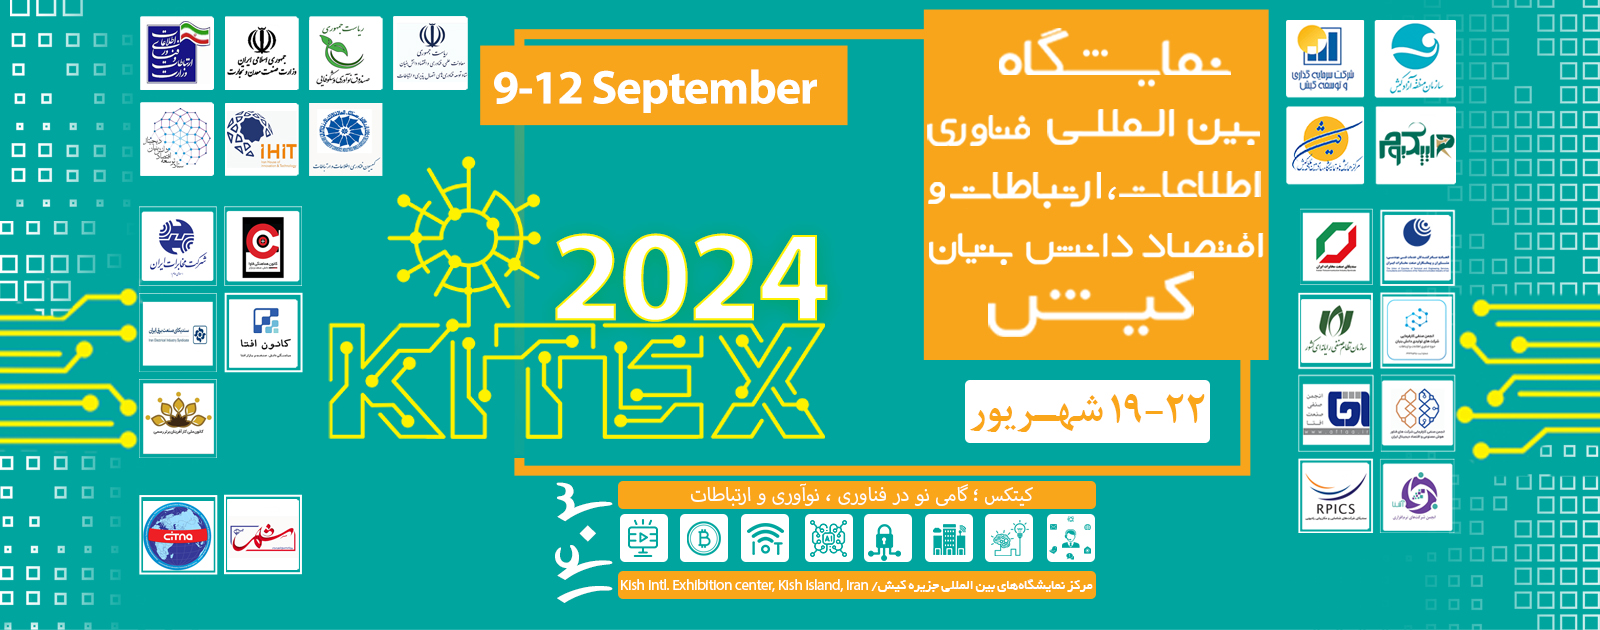 سومین دوره نمایشگاه بین المللی و تخصصی فناوری اطلاعات و ارتباطات کیش(kitex 2024)